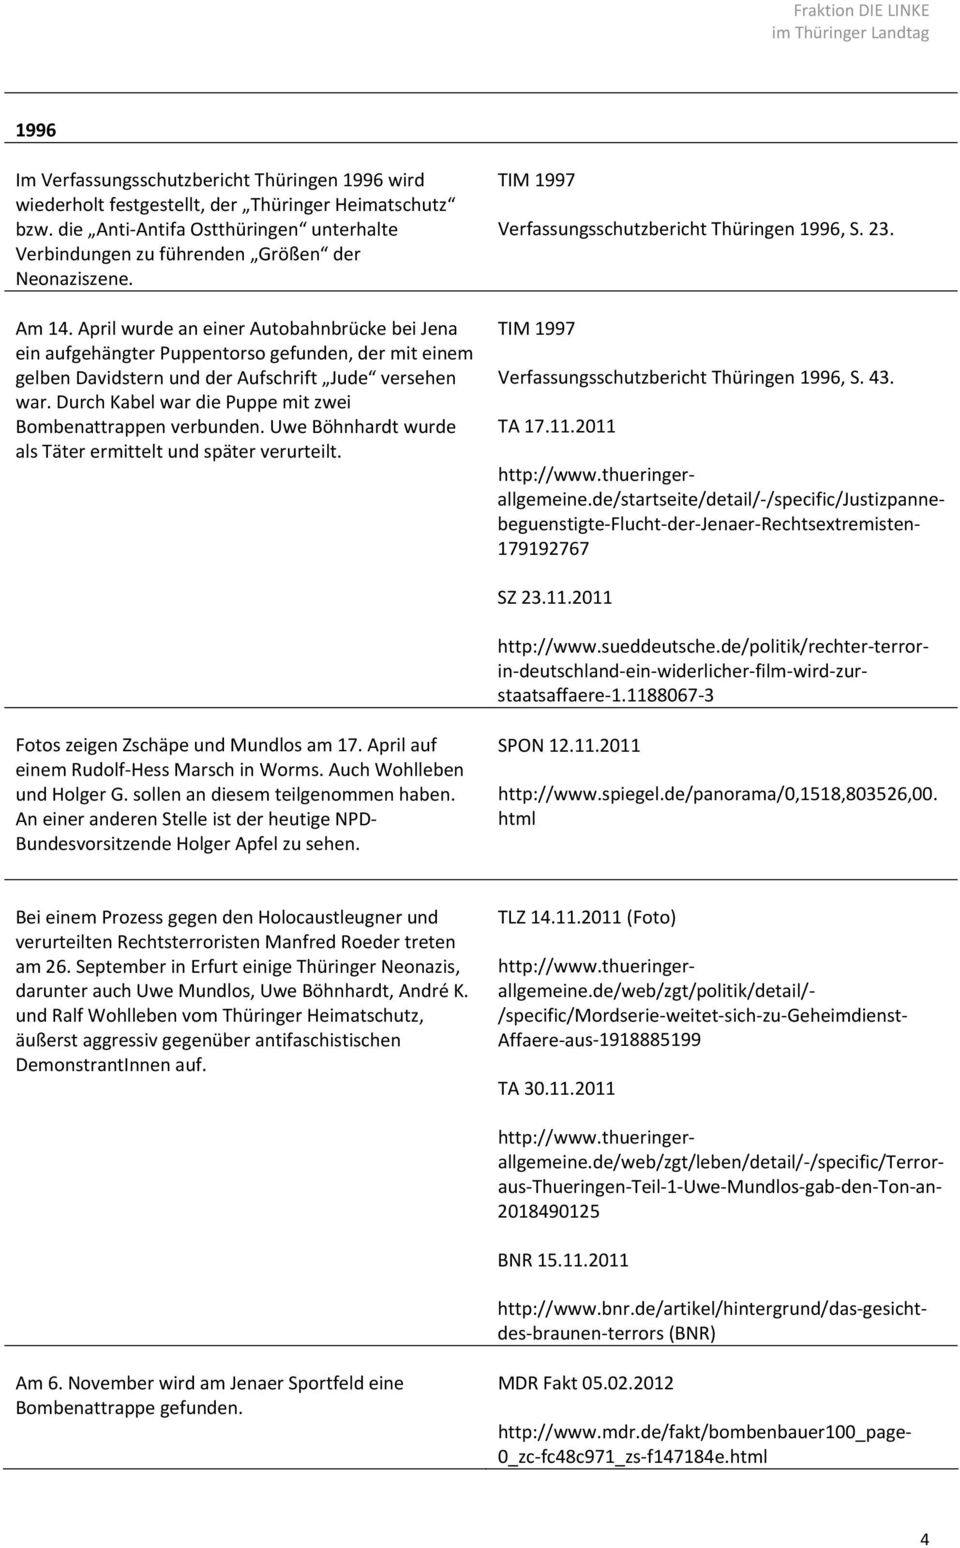 Durch Kabel war die Puppe mit zwei Bombenattrappen verbunden. Uwe Böhnhardt wurde als Täter ermittelt und später verurteilt. TIM 1997 Verfassungsschutzbericht Thüringen 1996, S. 23.